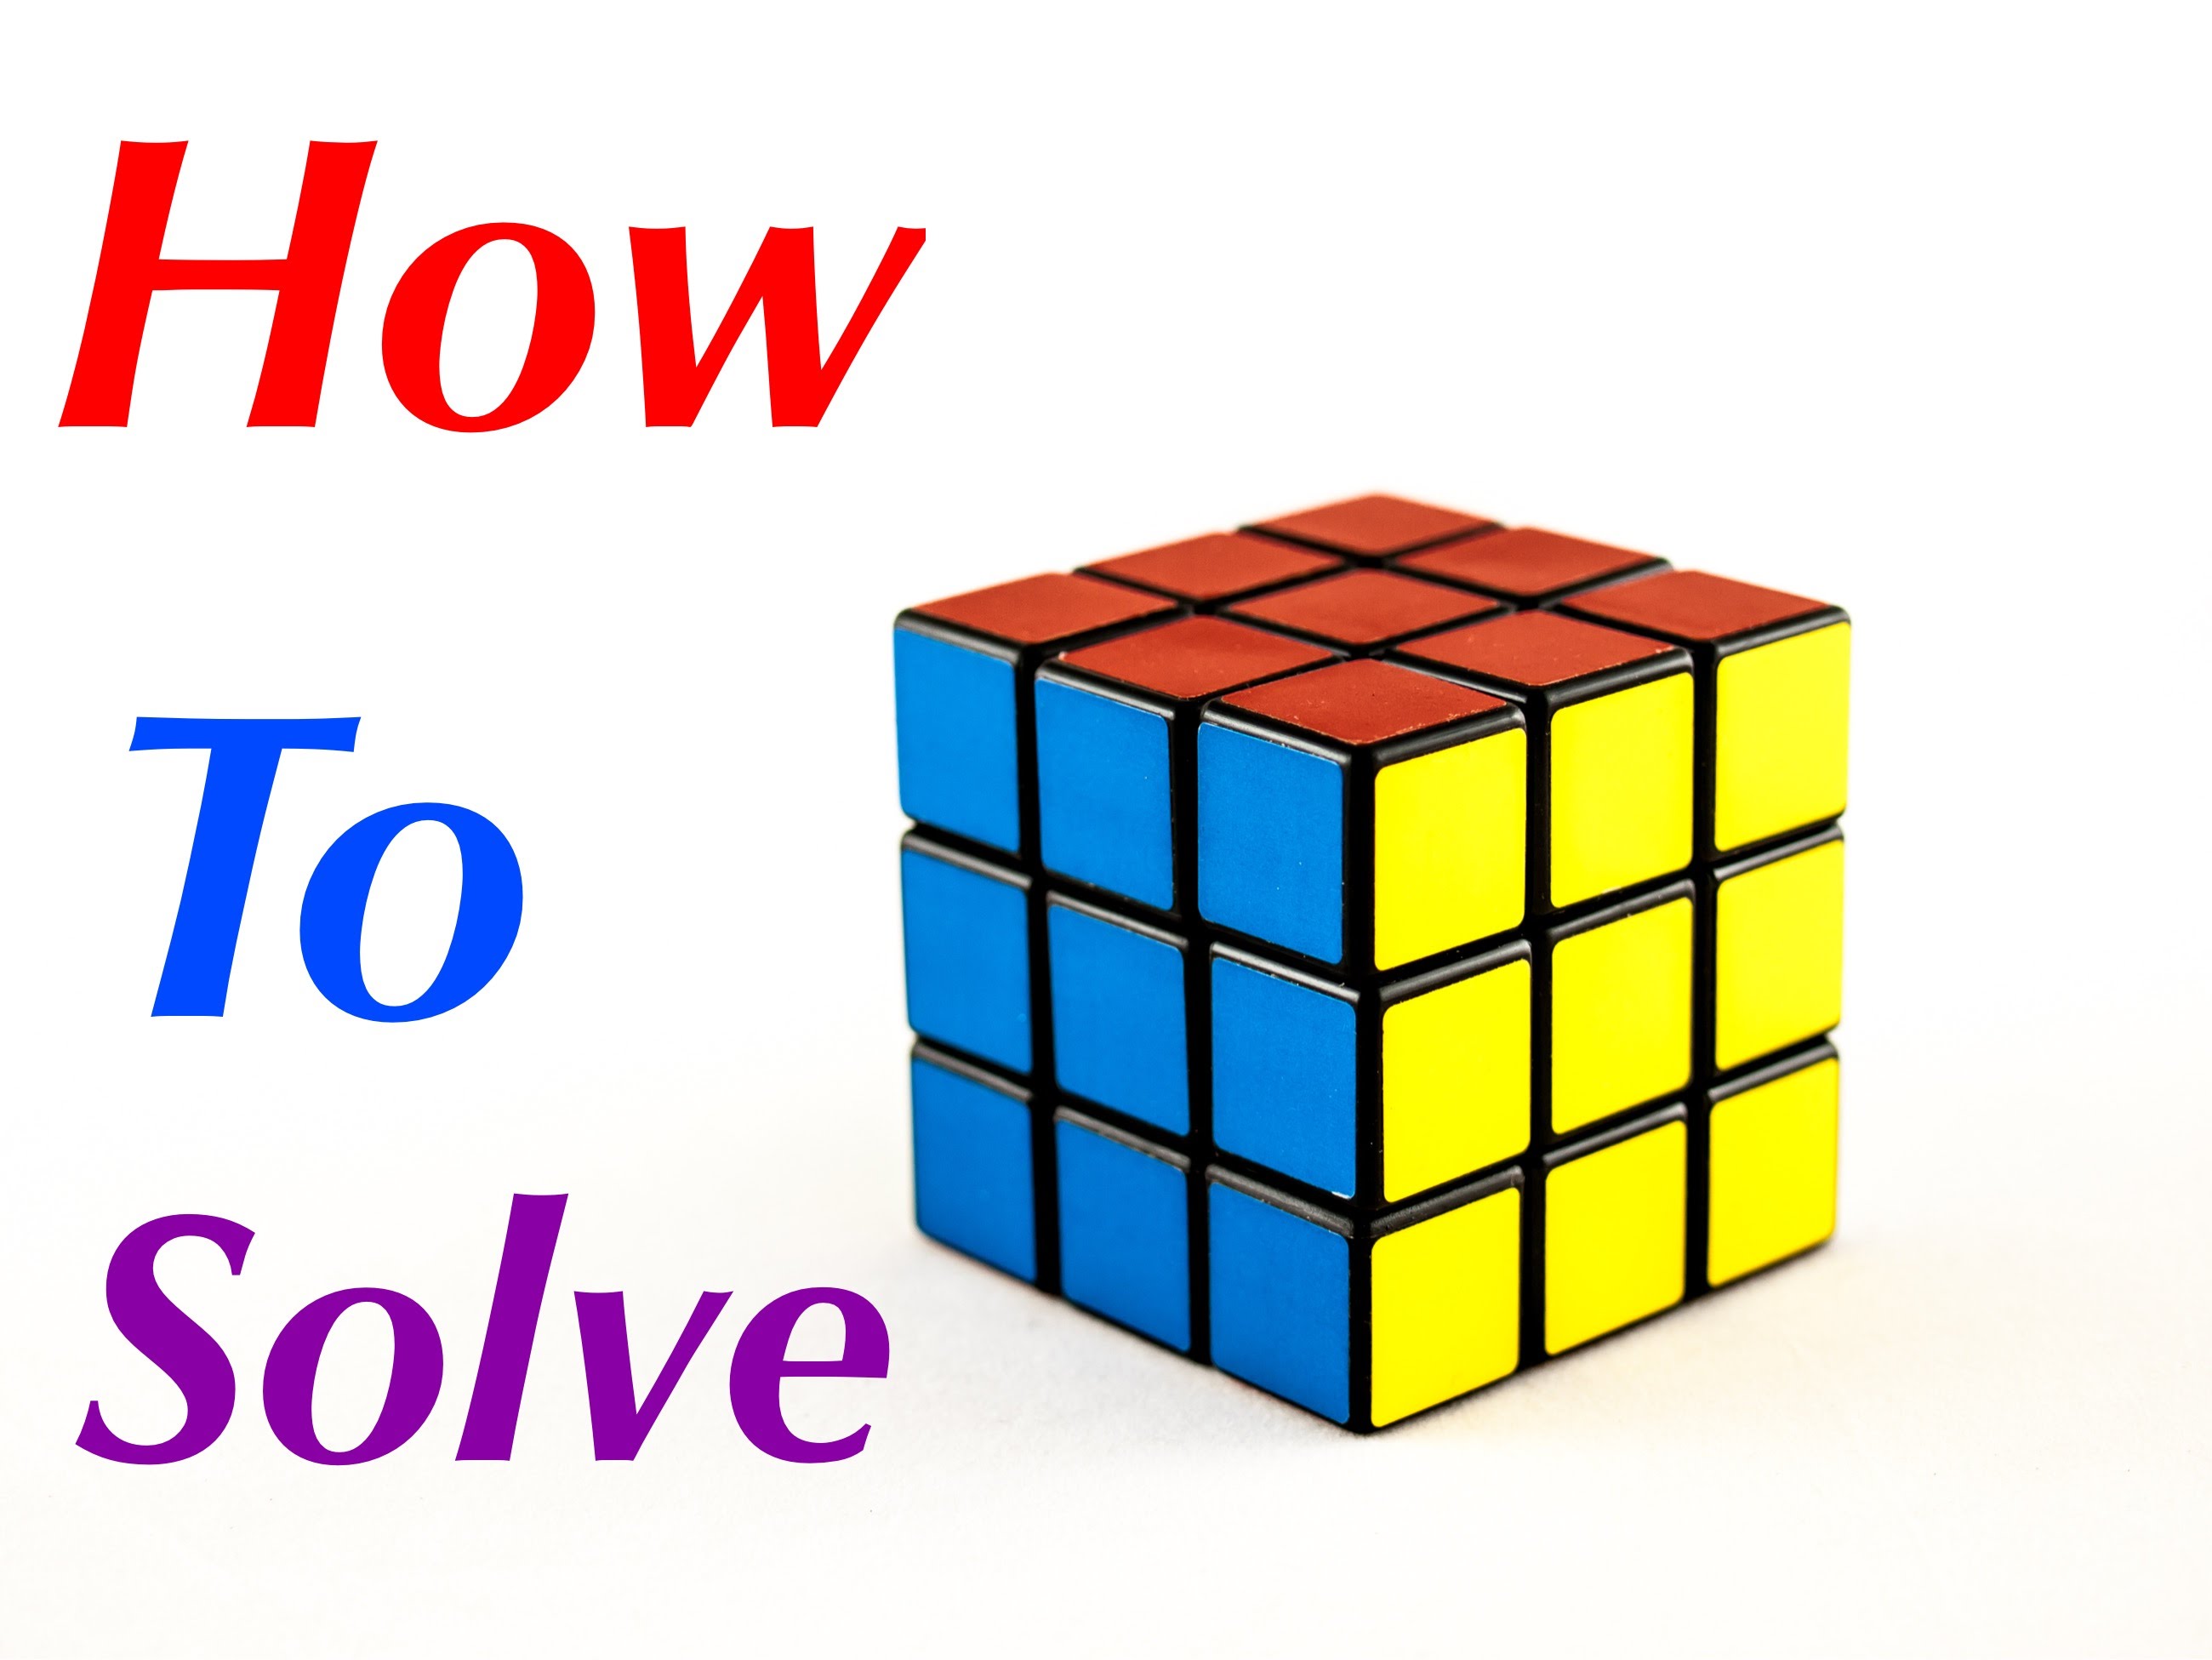 Cube solve. Cube 3x3 solve. Кубик рубик формула. Схема кубика Рубика 3х3. Схема сборки кубика Рубика 3х3.